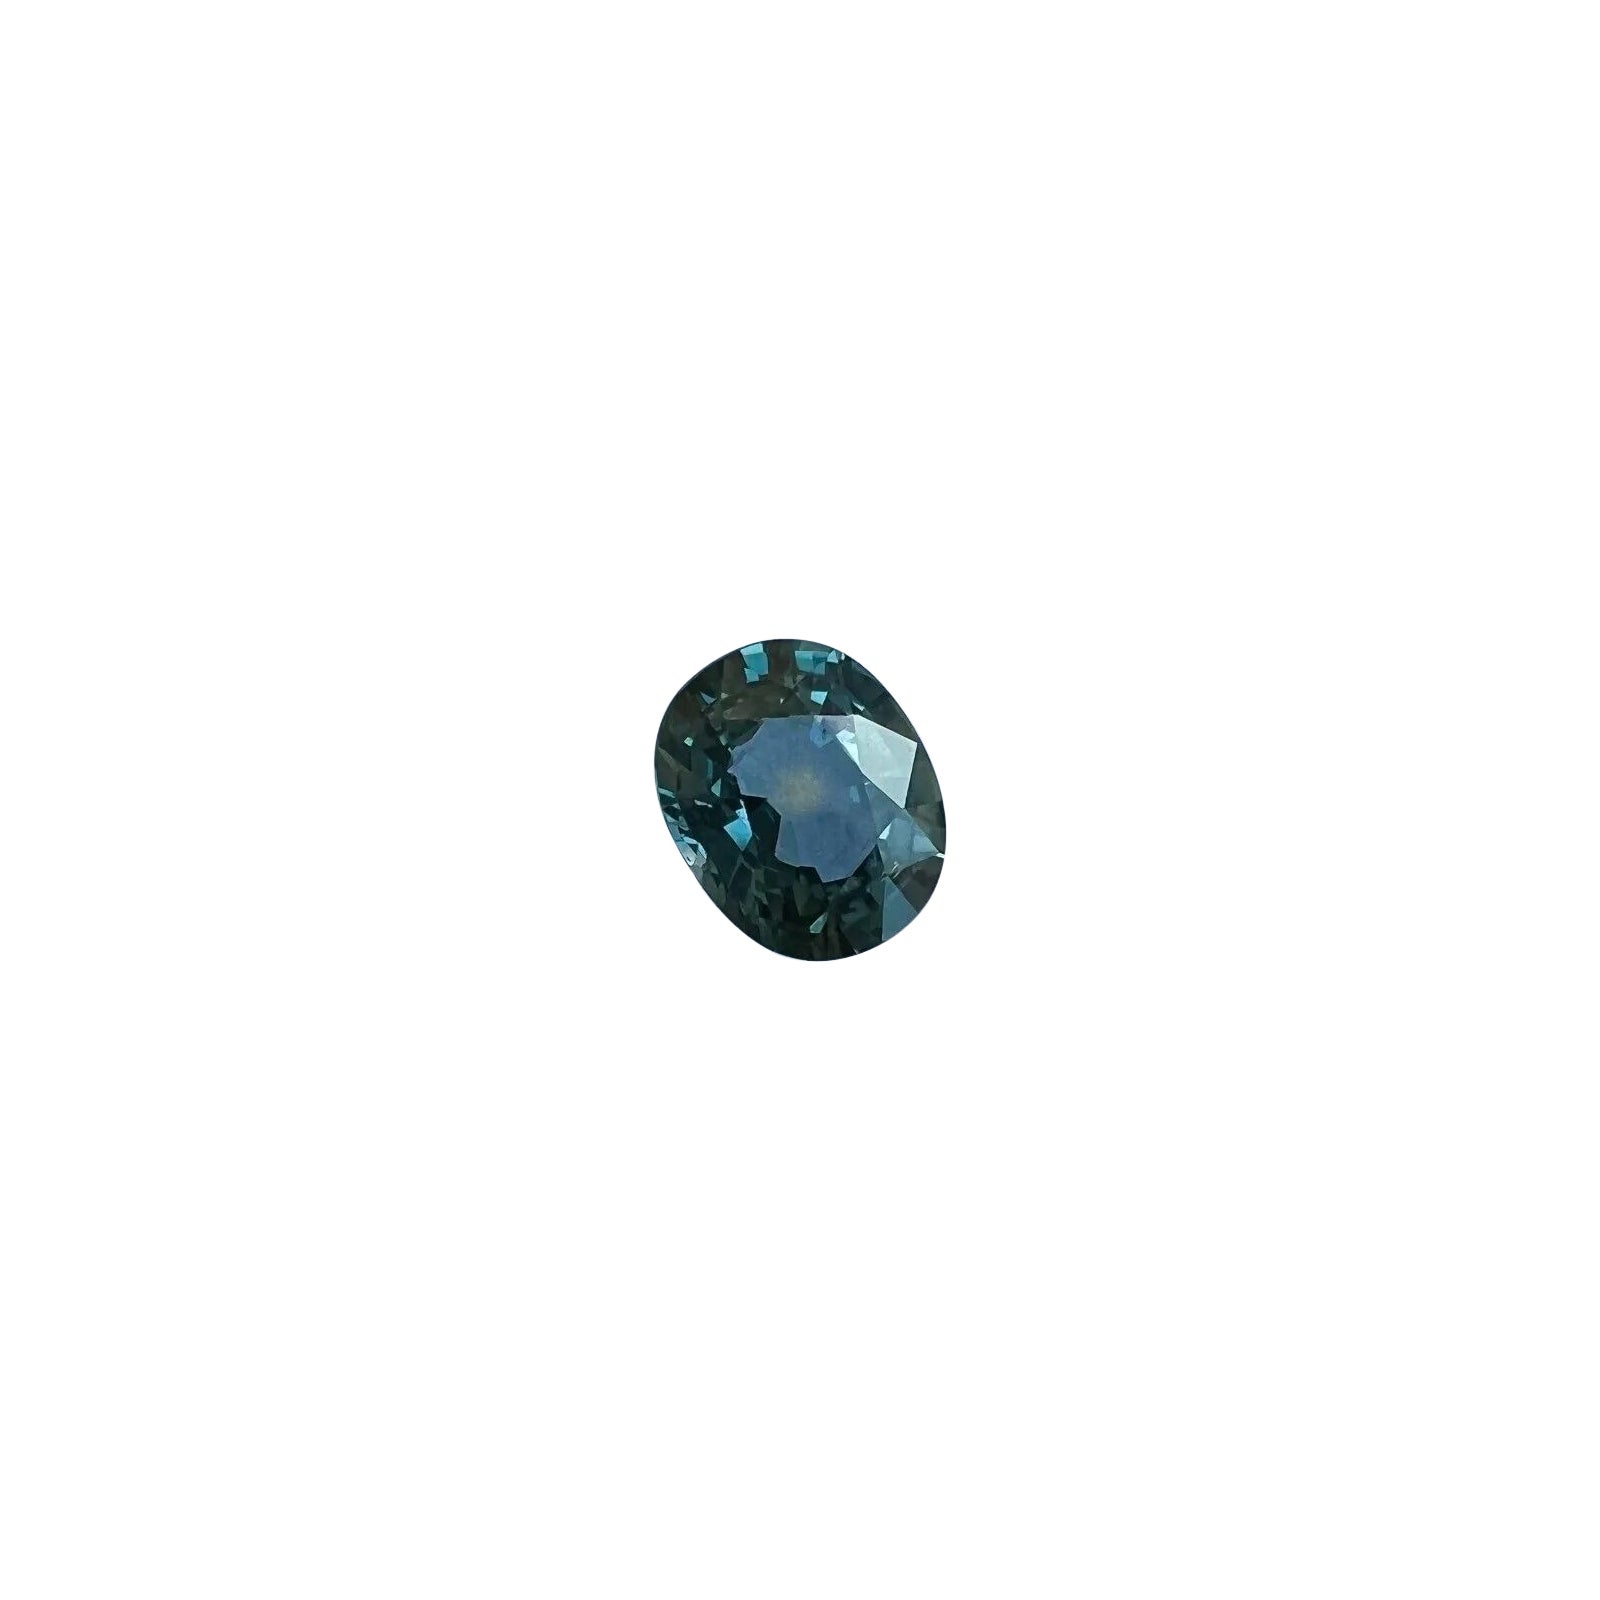 Einzigartiger unbehandelter grüner blauer Saphir 0,94 Karat IGI-zertifizierter unerhitzter Edelstein im Ovalschliff